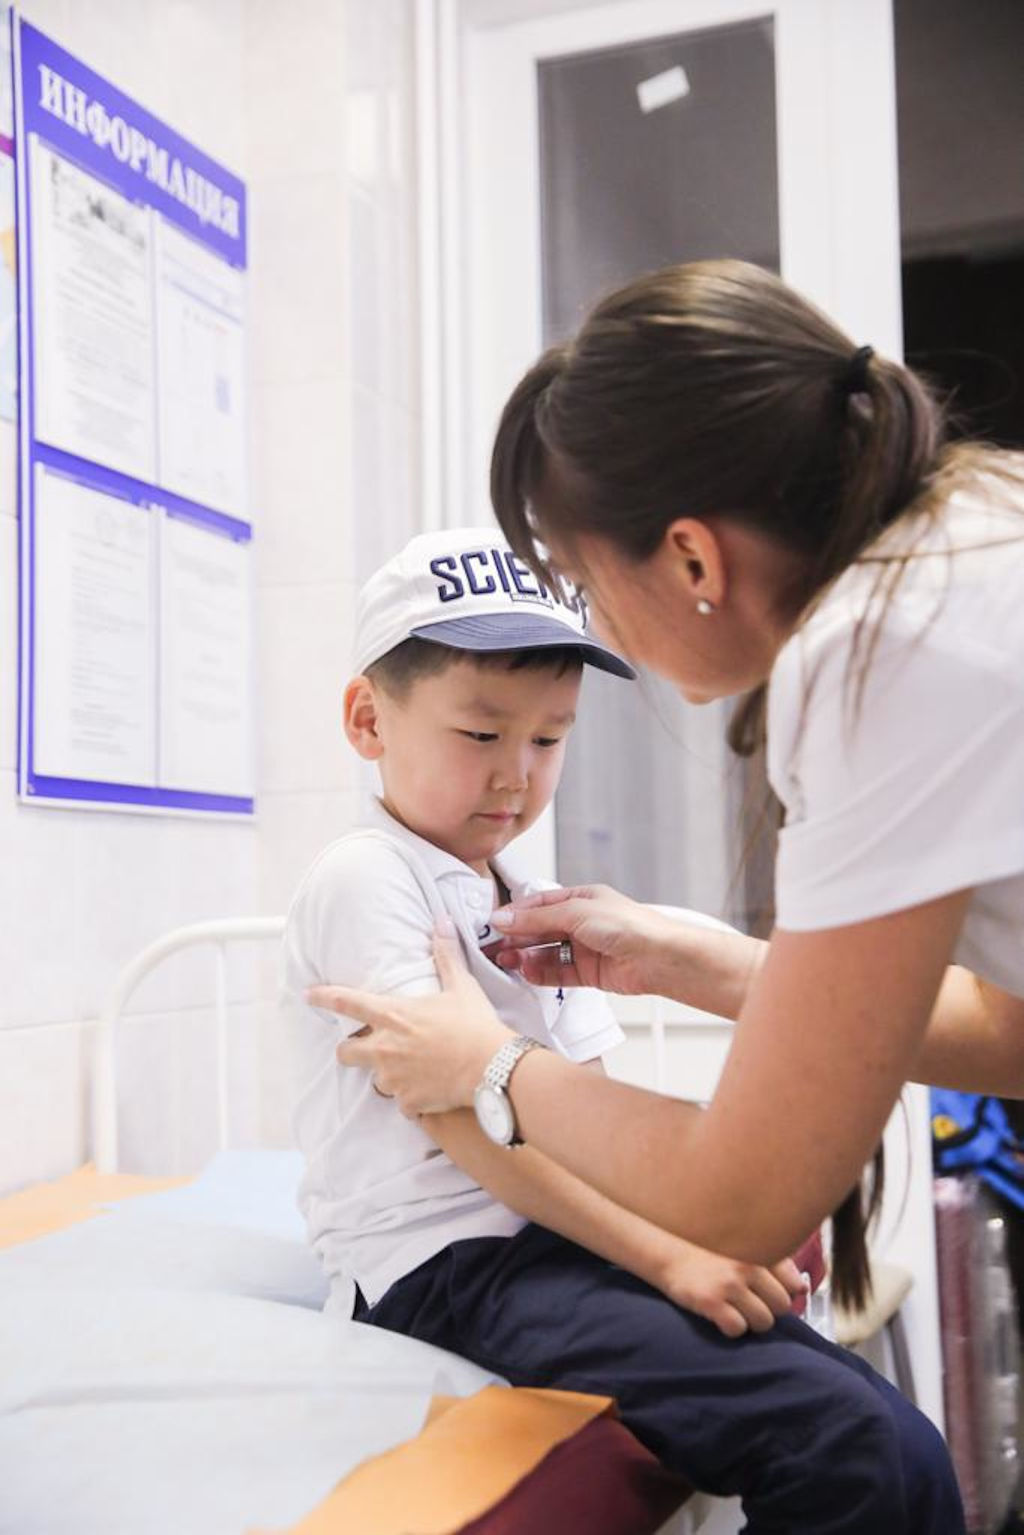 Больница им. З.А. Башляевой приняла тяжелобольных детей из Забайкалья на лечение по программе Национального центра «Область здоровья»